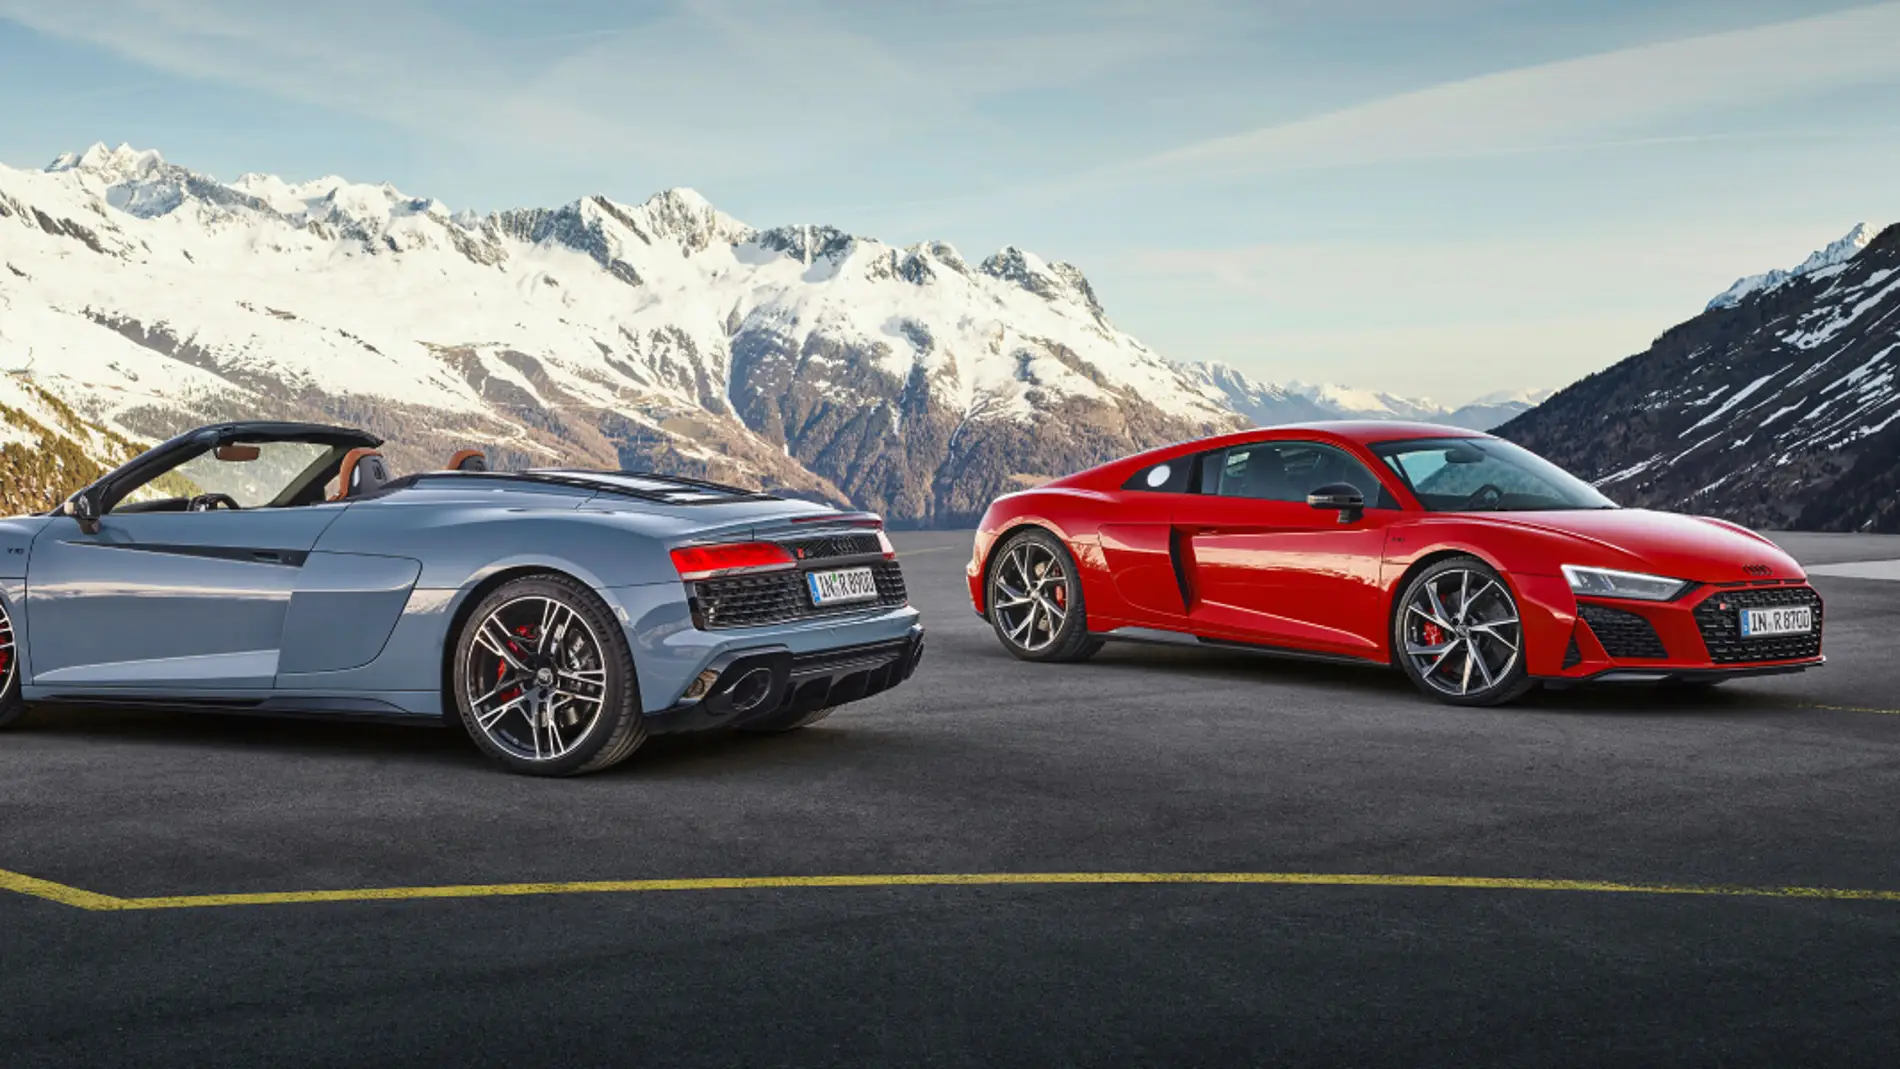 Audi desvela que el próximo Audi R8 será un deportivo eléctrico